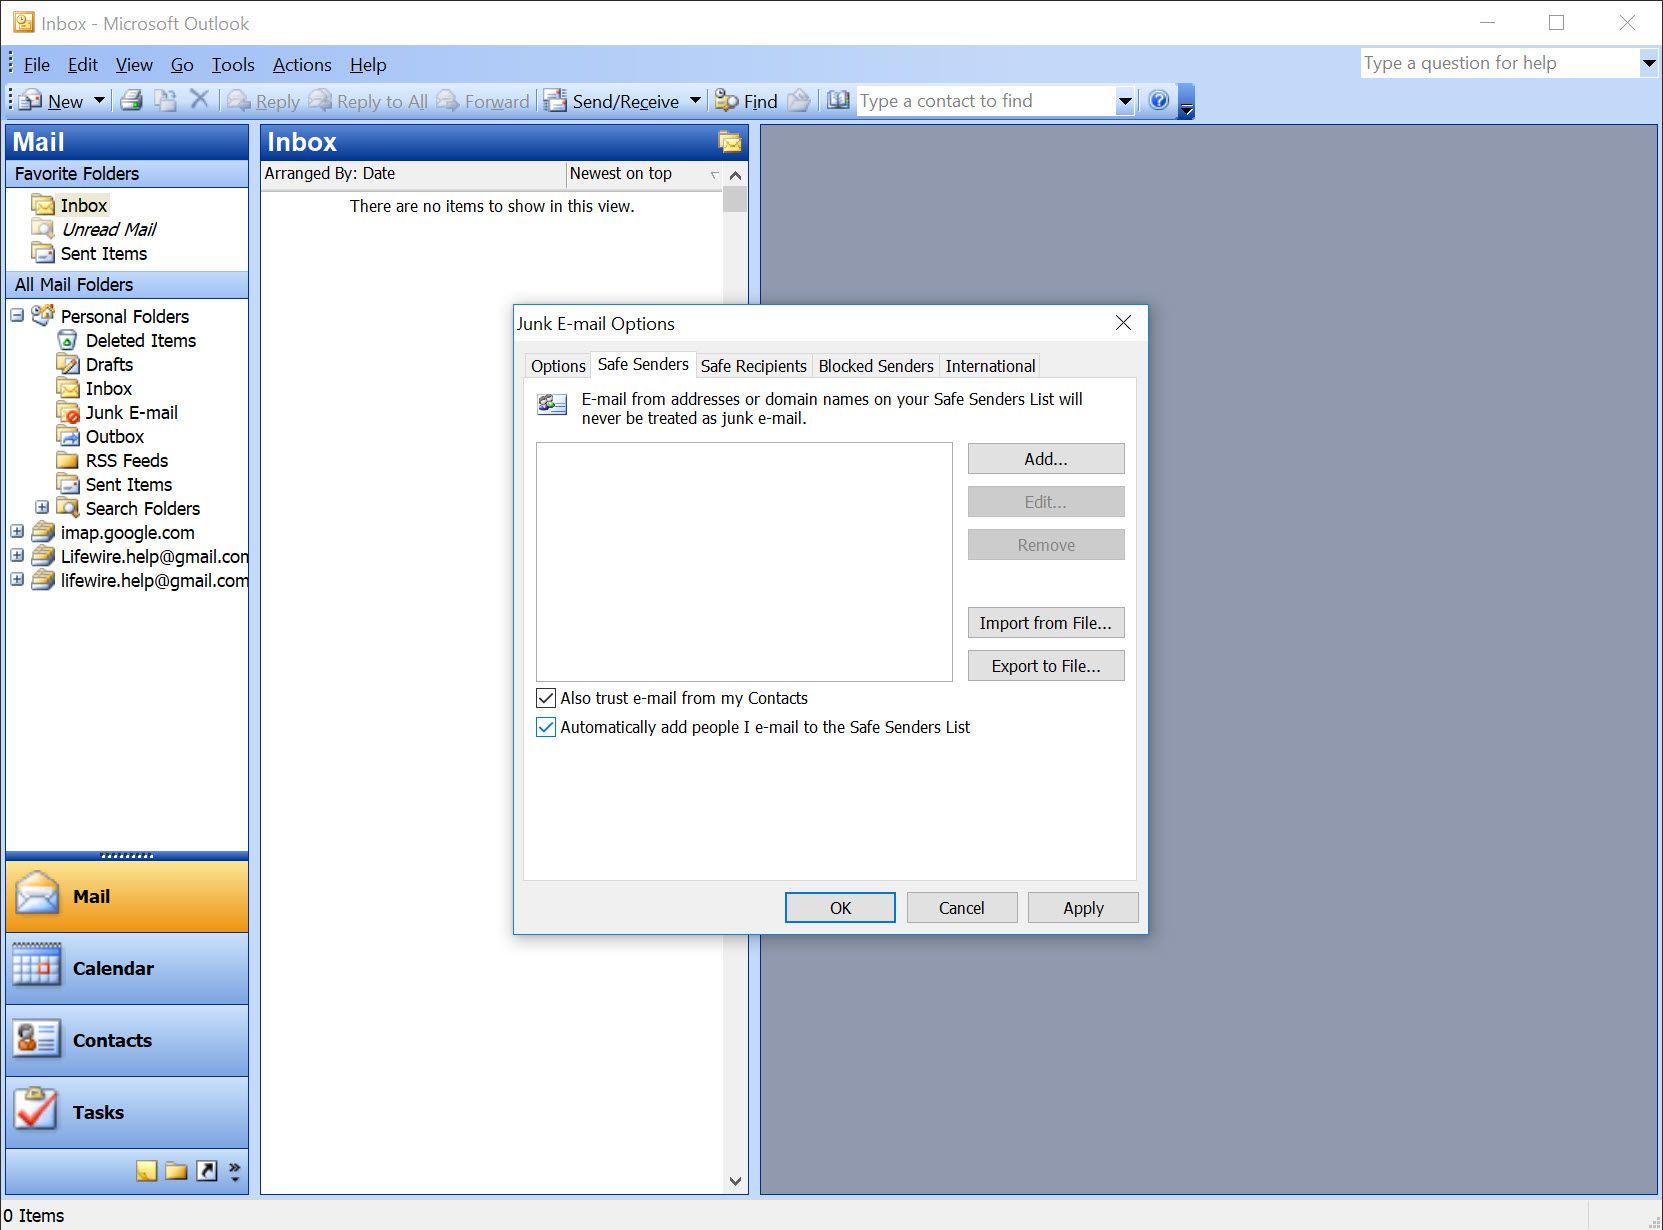 Tabblad Veilige afzenders van Outlook 2003 met het selectievakje "Automatisch personen toevoegen die ik e-mail" aangevinkt